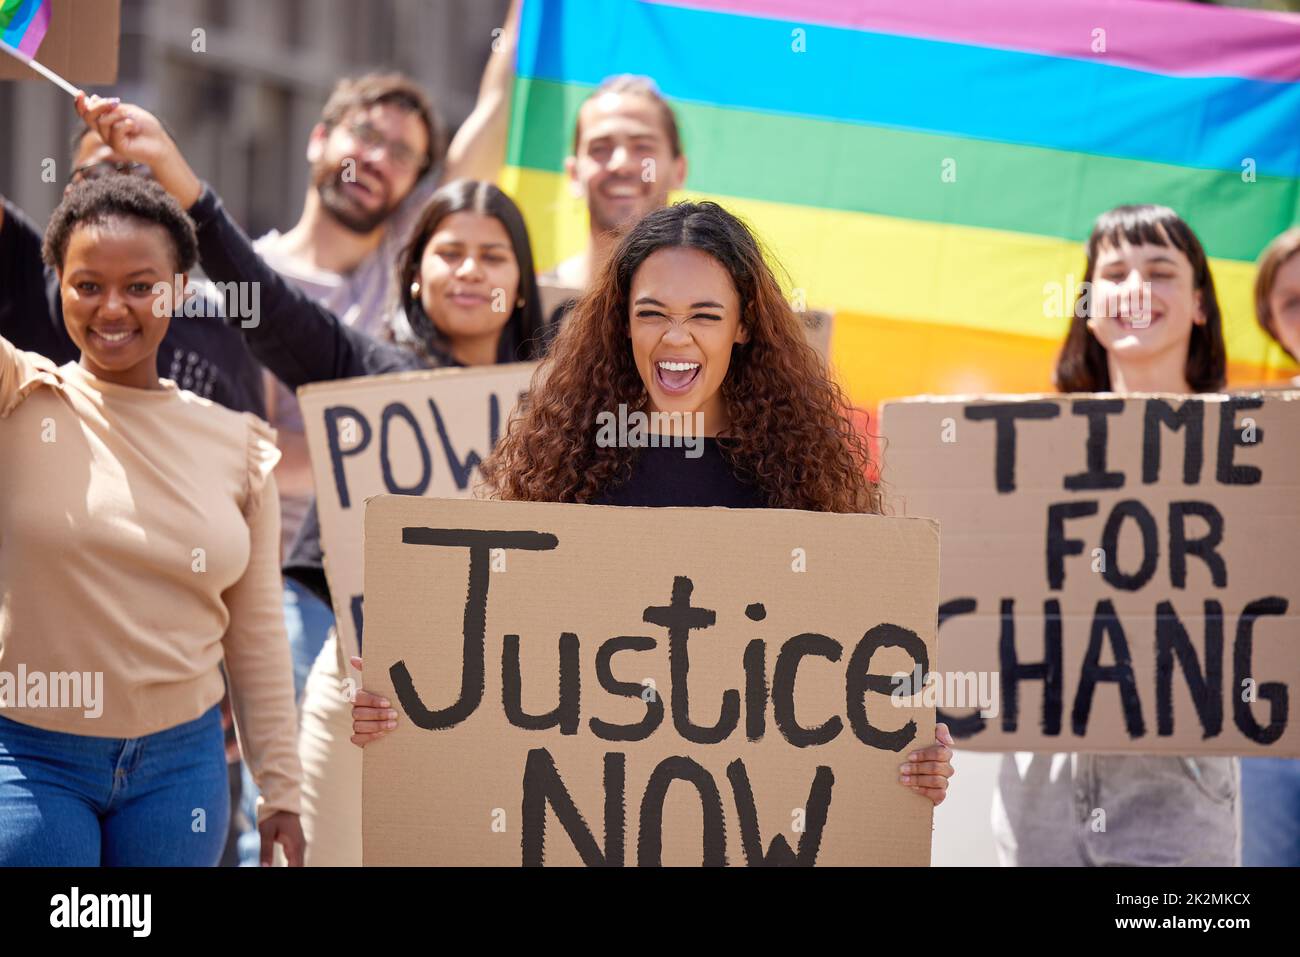 Jeder verdient das Recht auf Liebe. Aufnahme einer Gruppe junger Menschen, die für die Rechte der lgbtq protestieren. Stockfoto